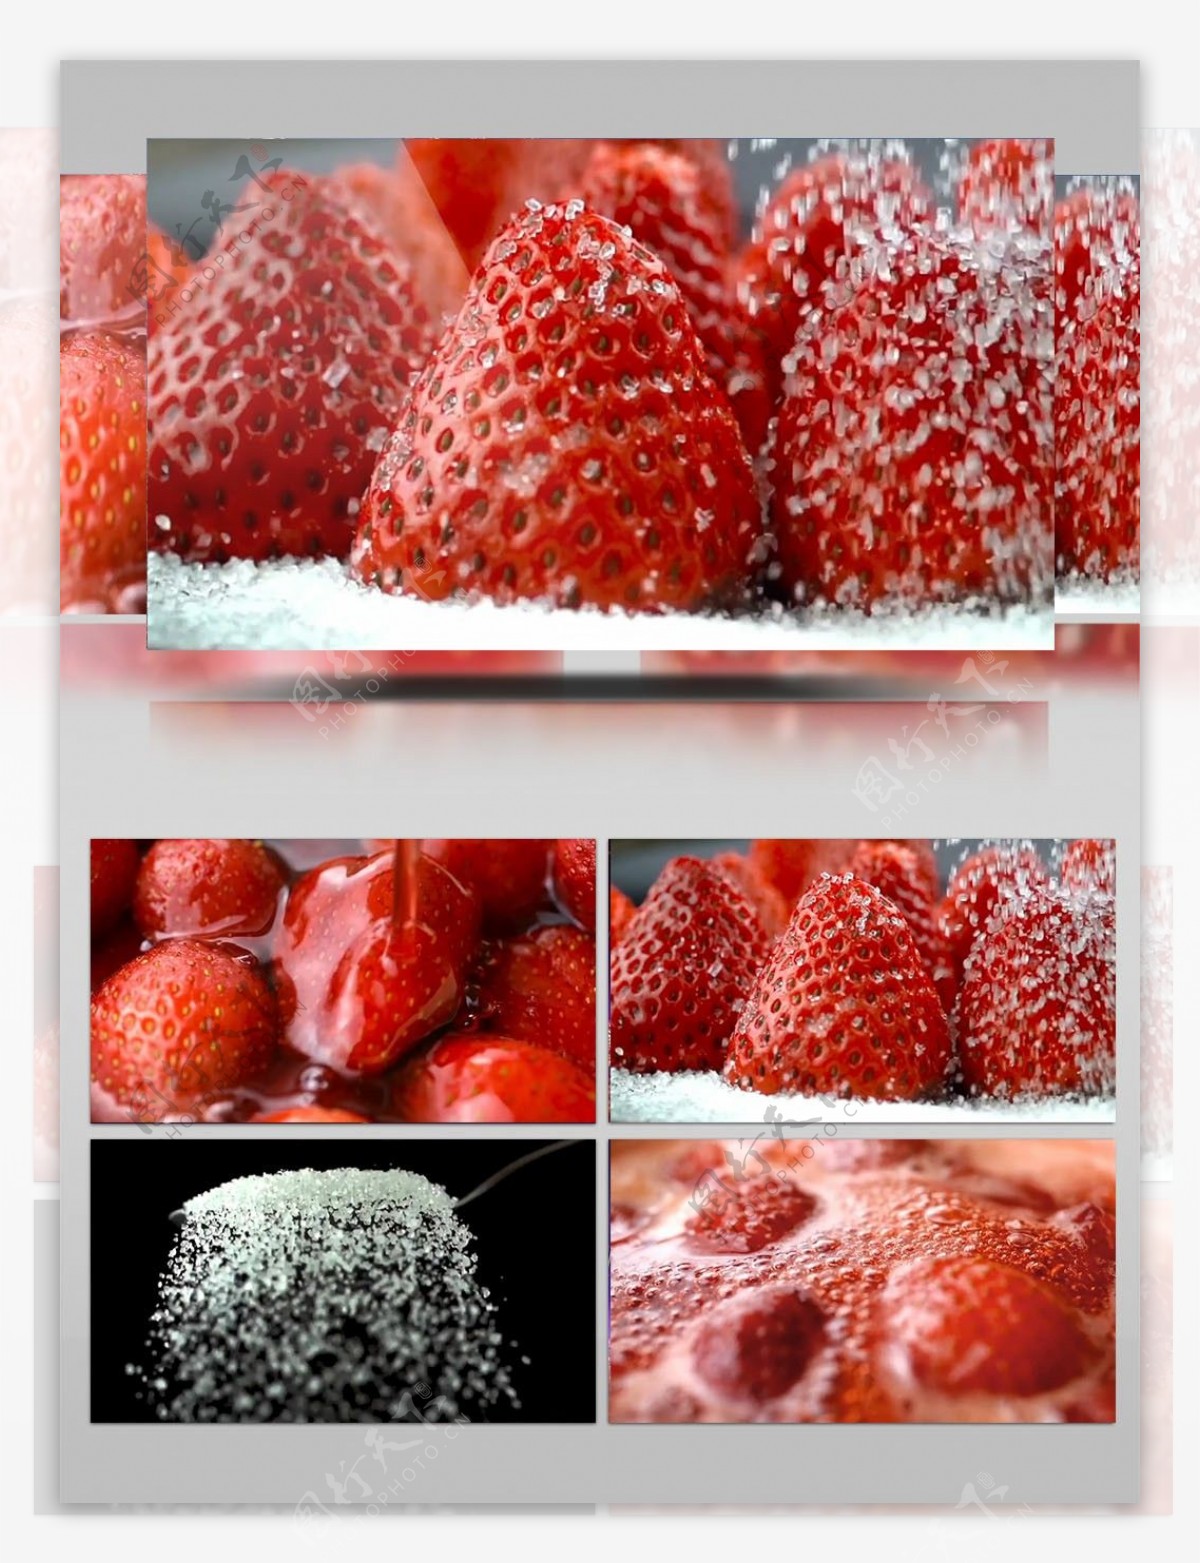 草莓美食制作宣传视频素材